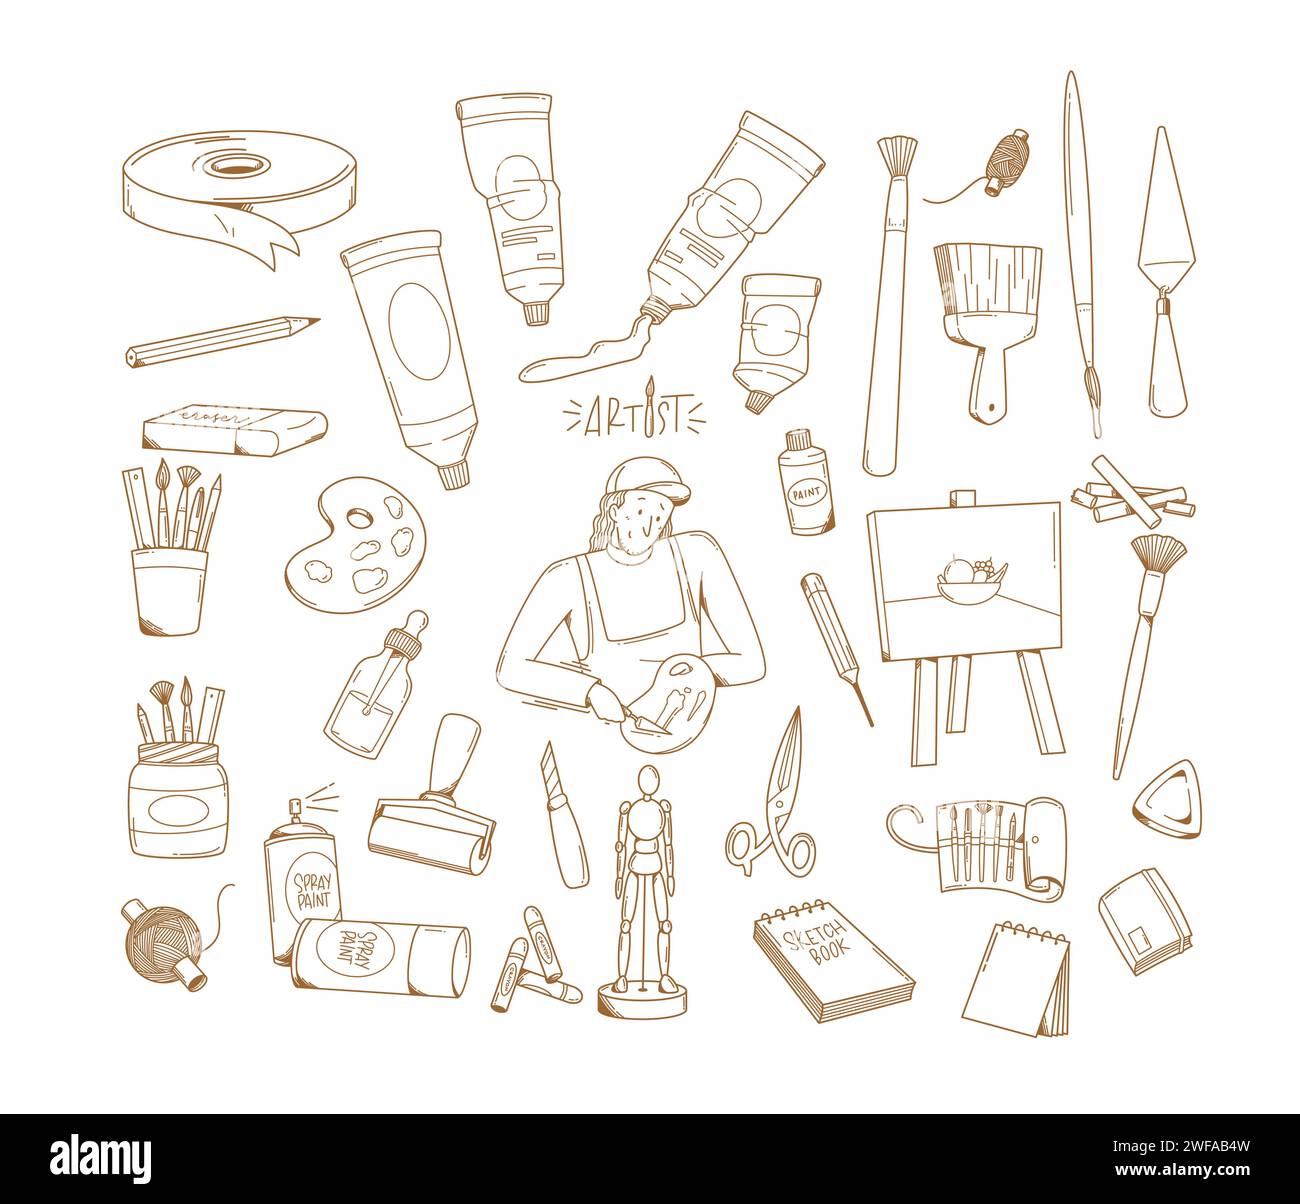 Illustration de l'ensemble vectoriel d'éléments de conception de doodle d'artiste créatif dessiné à la main Illustration de Vecteur